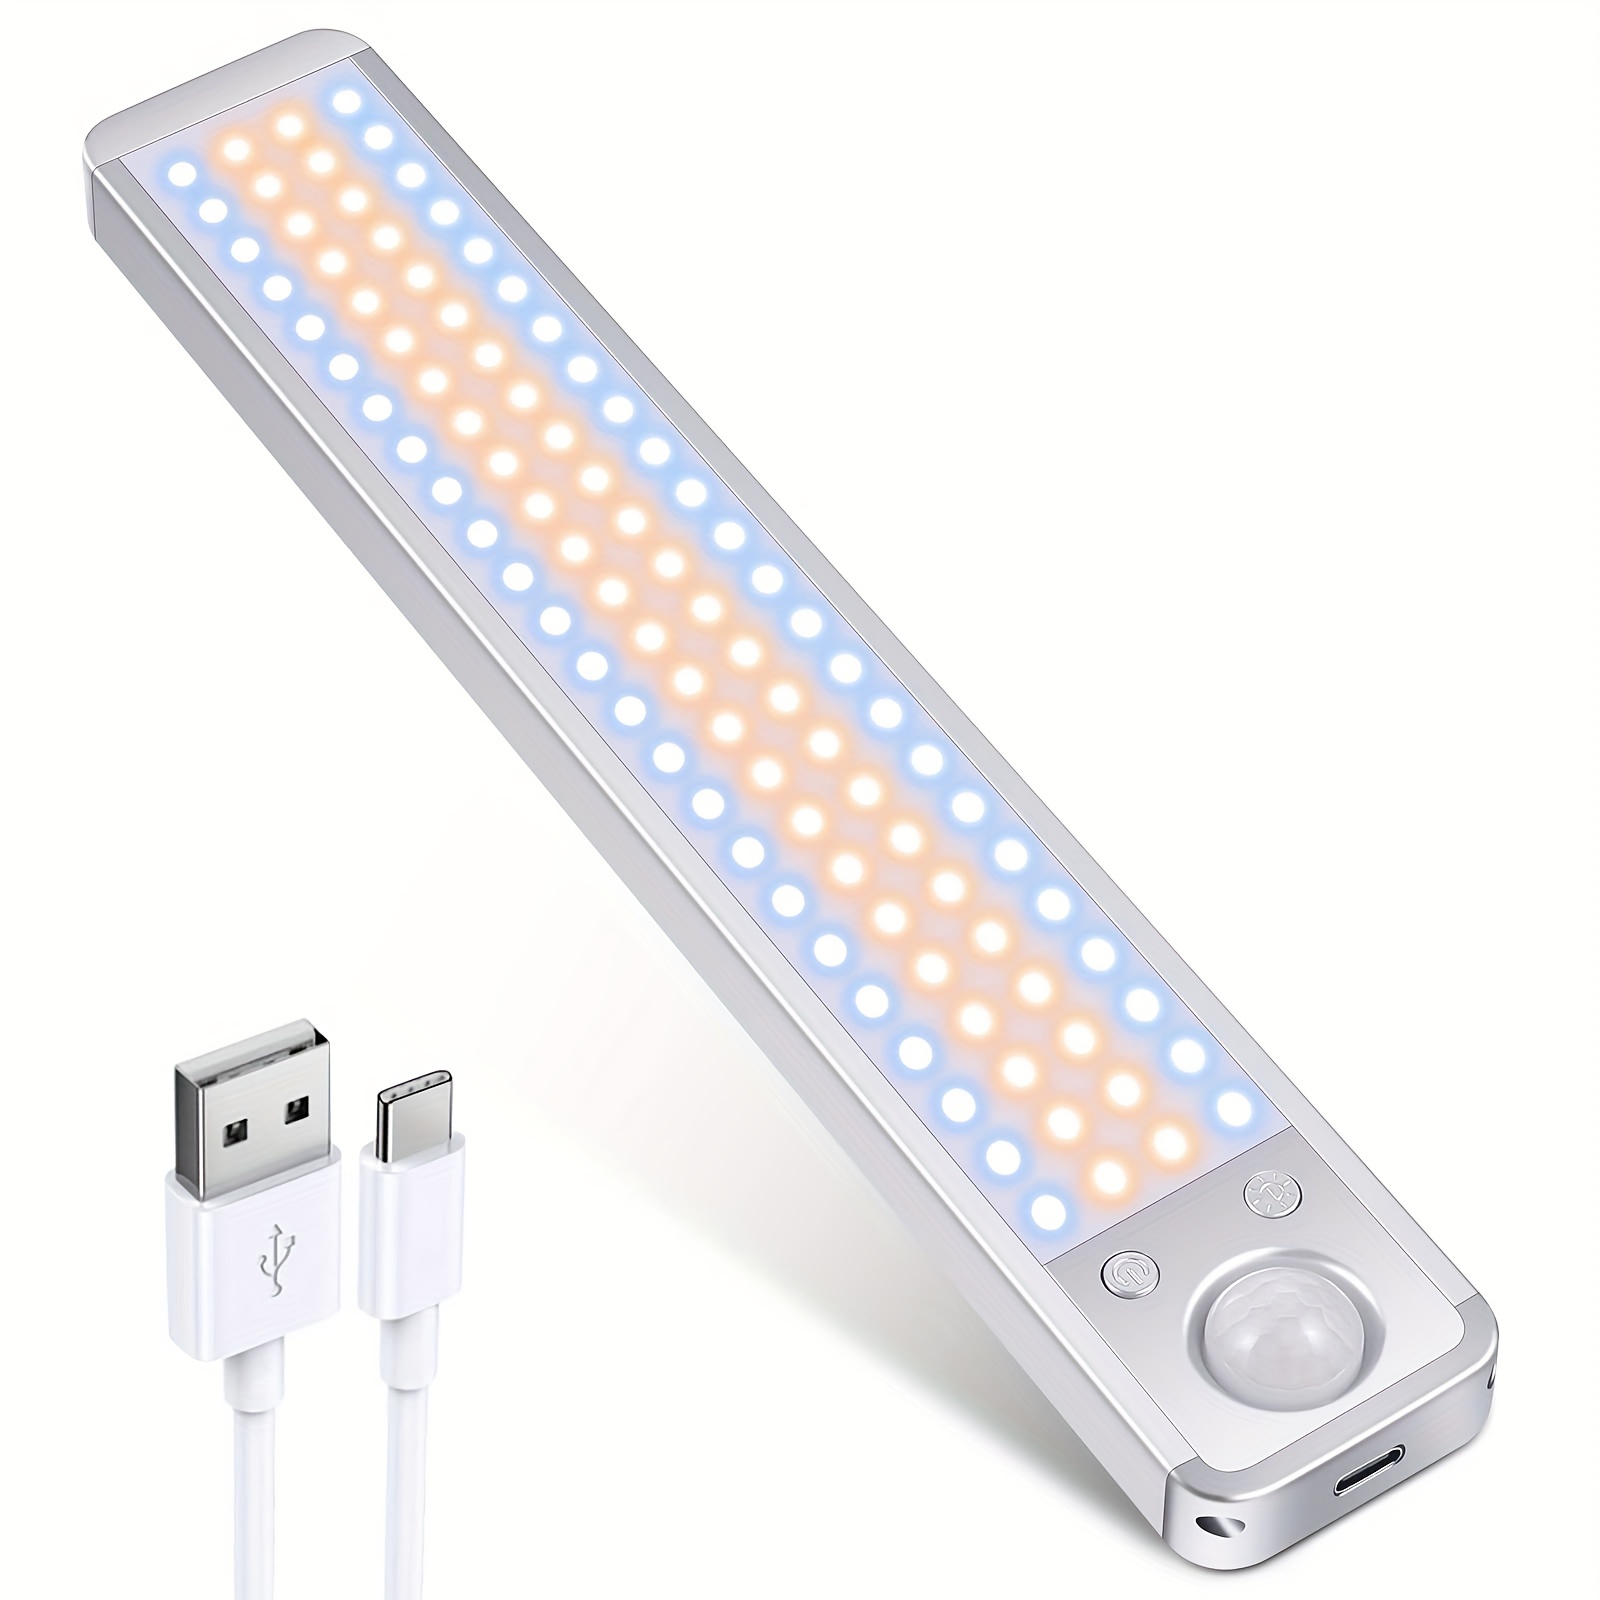 Luz LED de pared recargable por USB – Mueblive Muebles